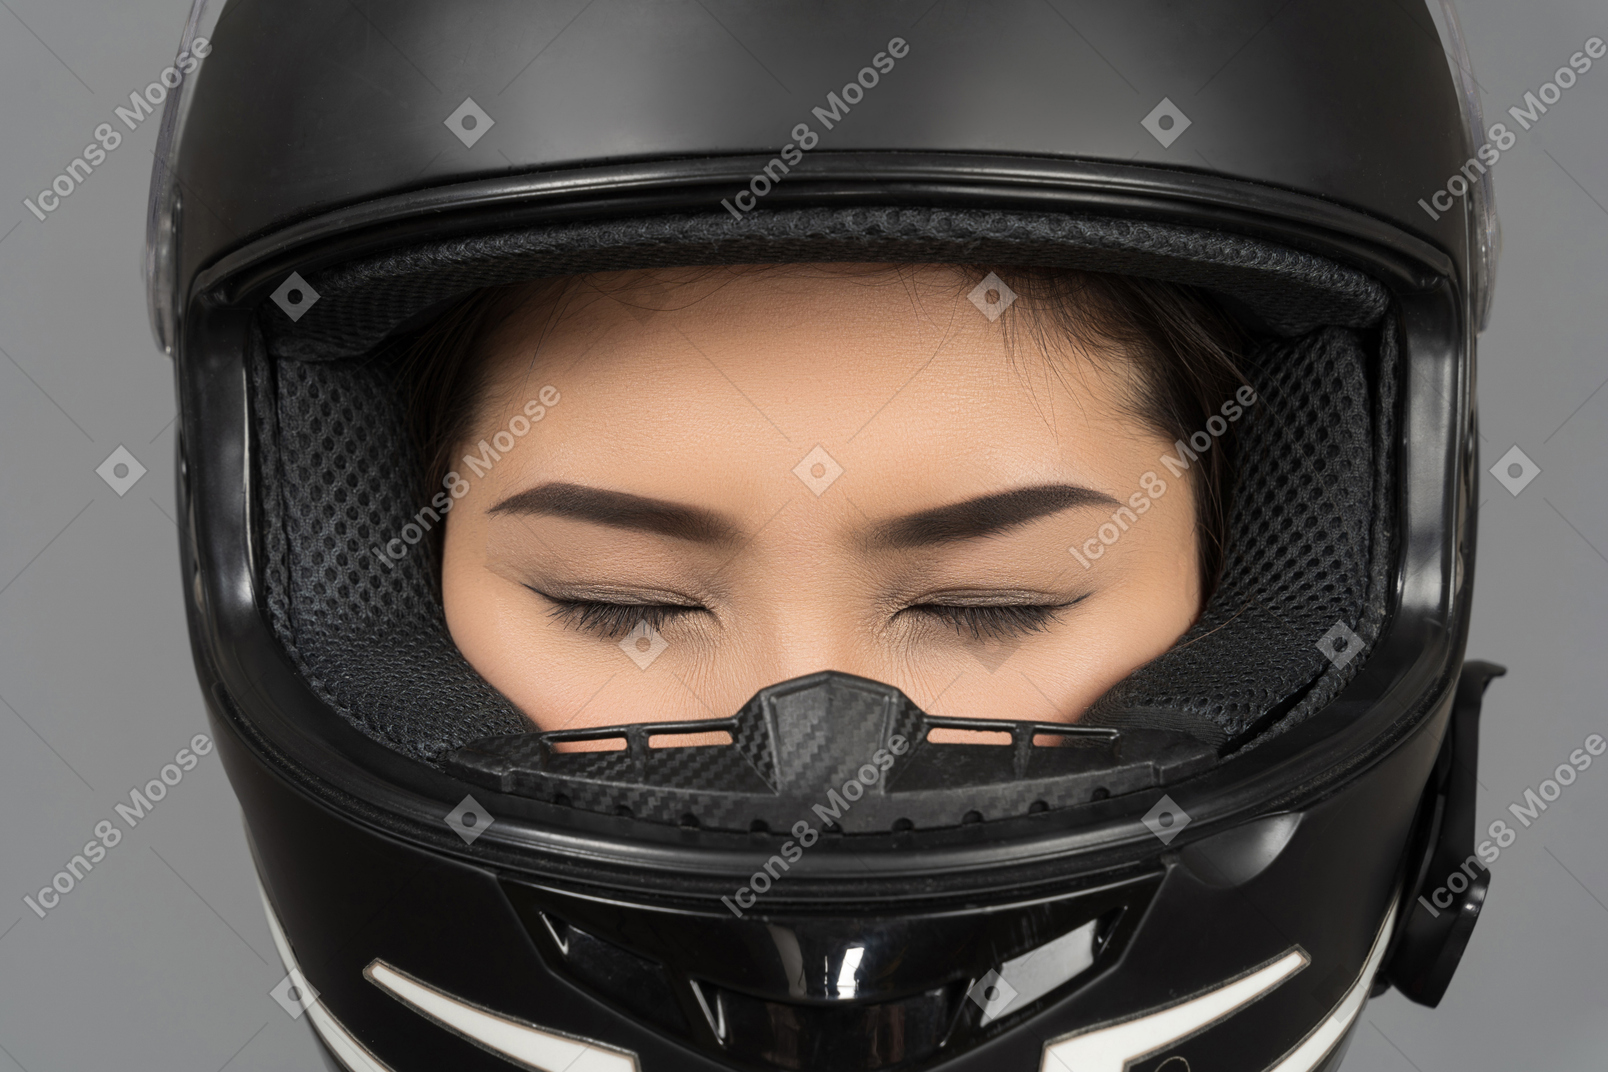 黒いヘルメットをかぶった目を閉じている女性